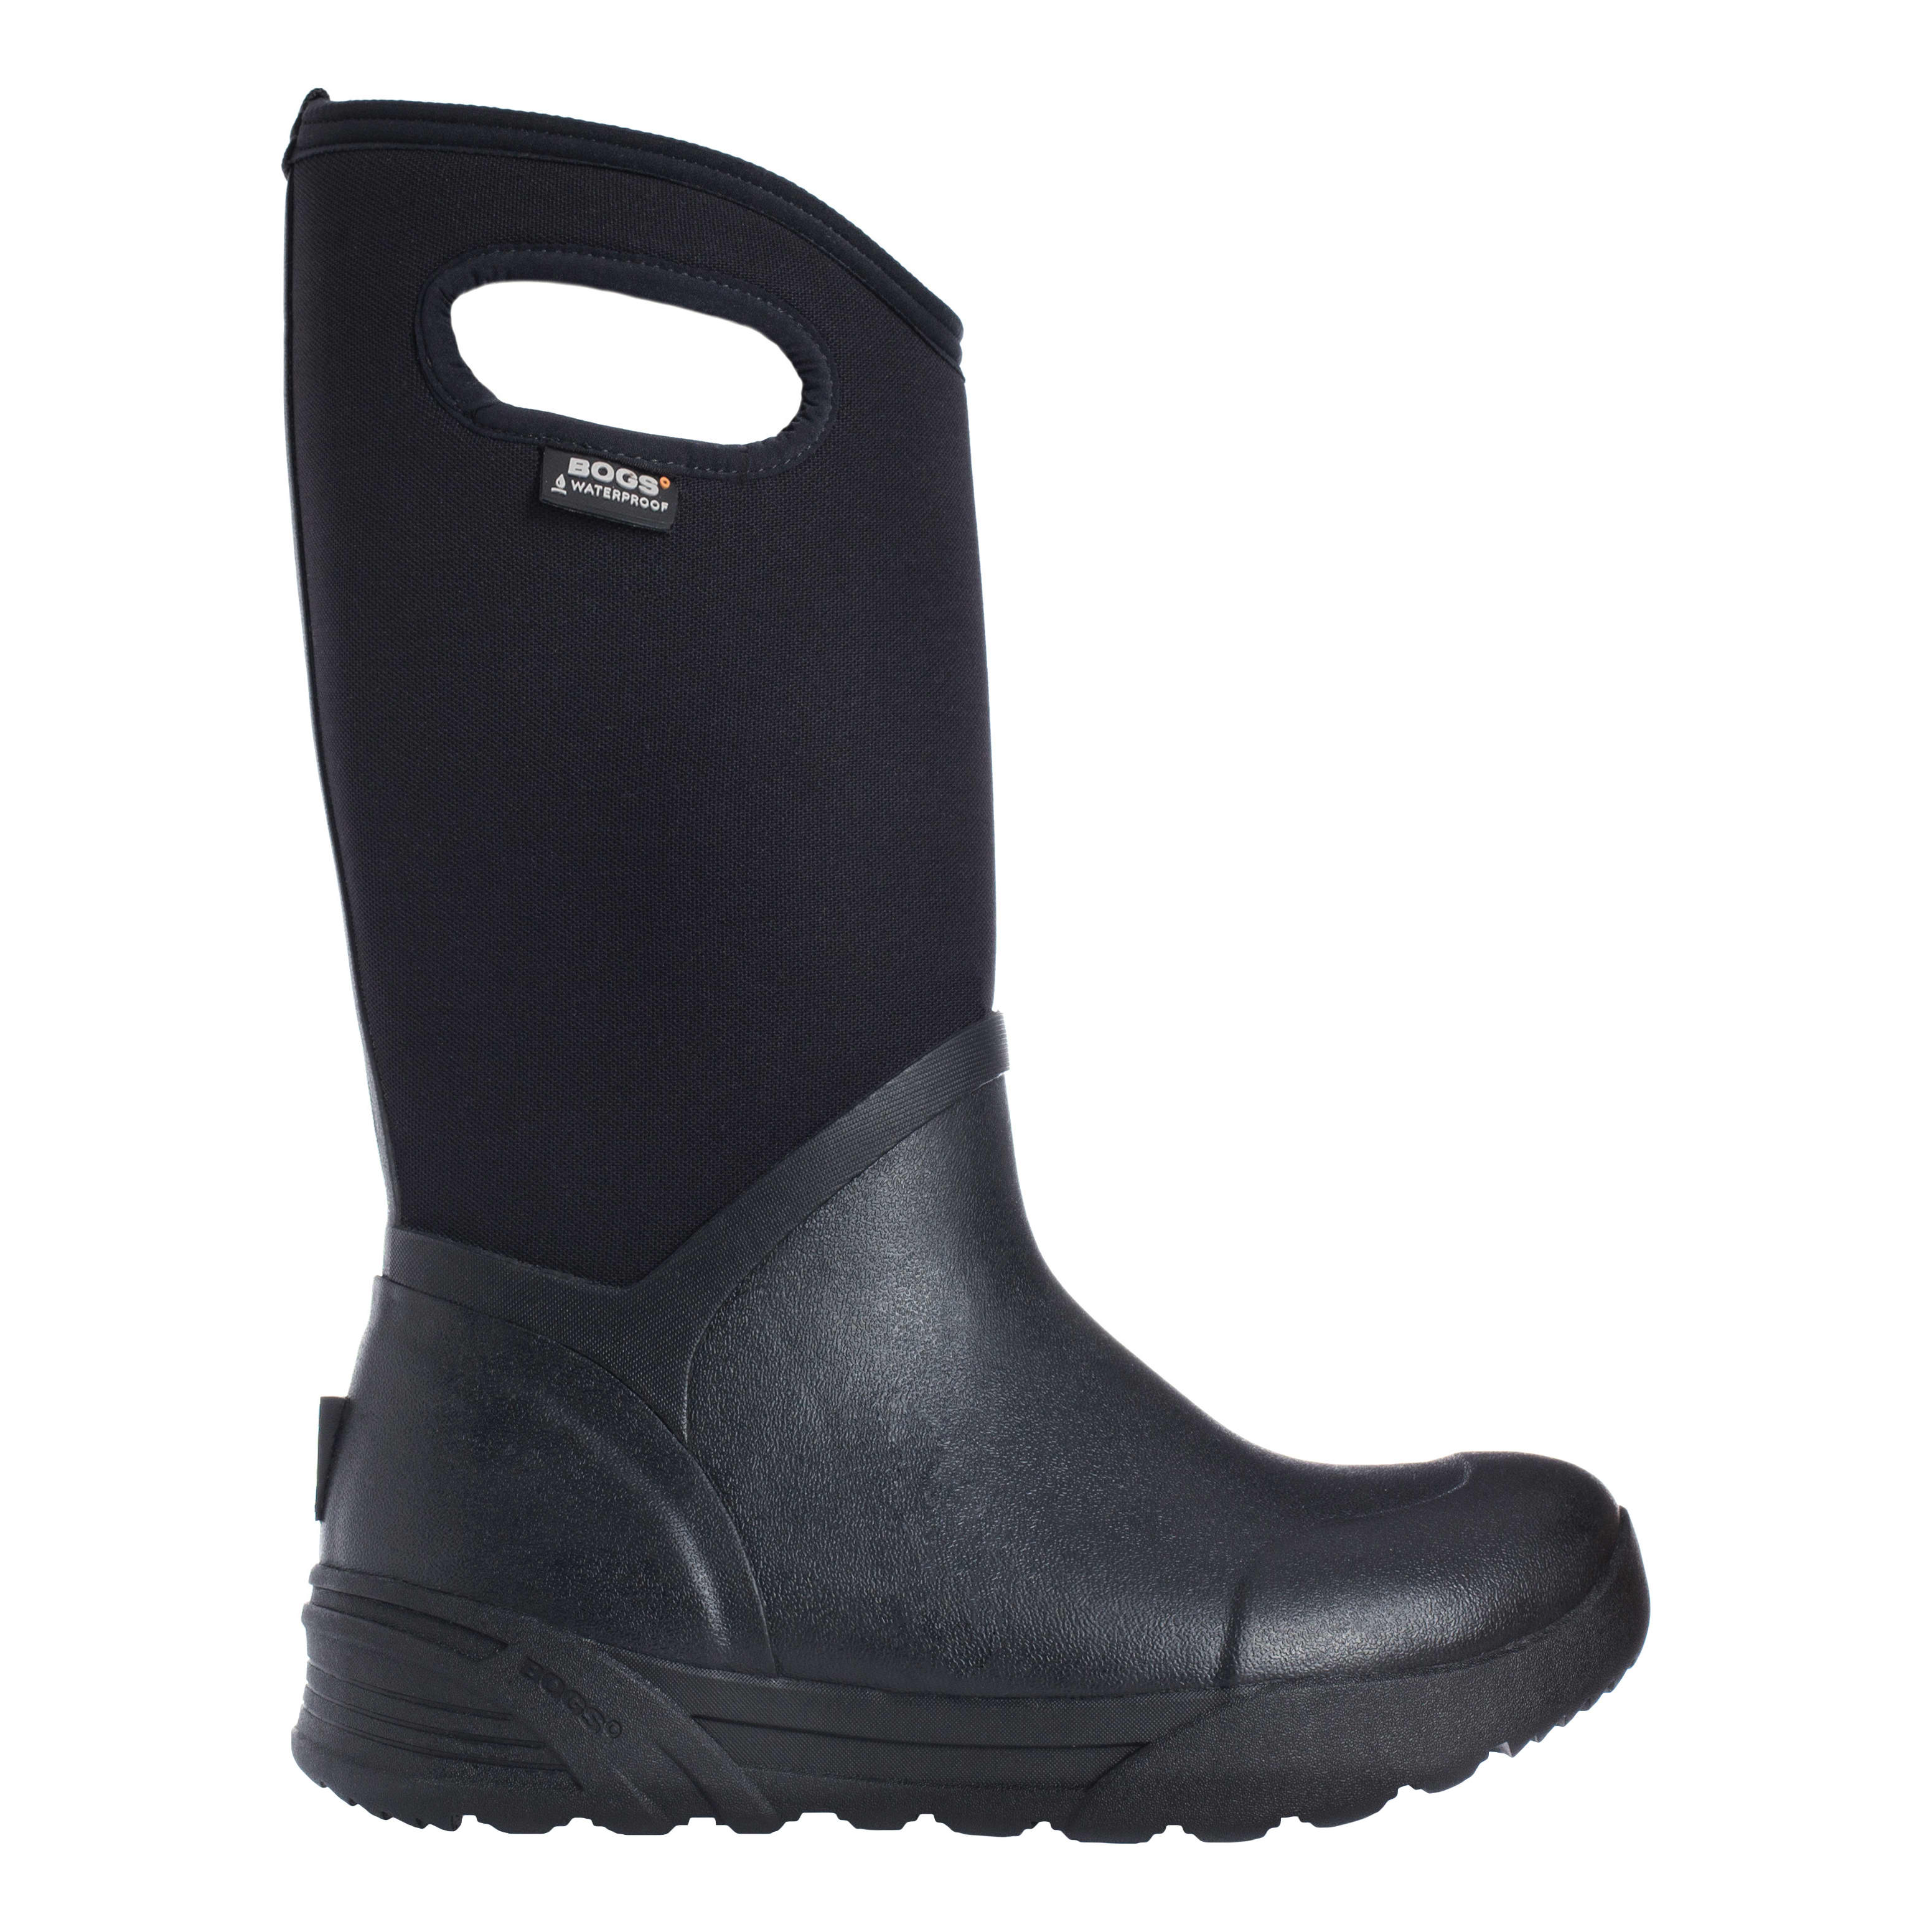 Bogs® Men’s Bozeman Tall Insulated Winter Boots